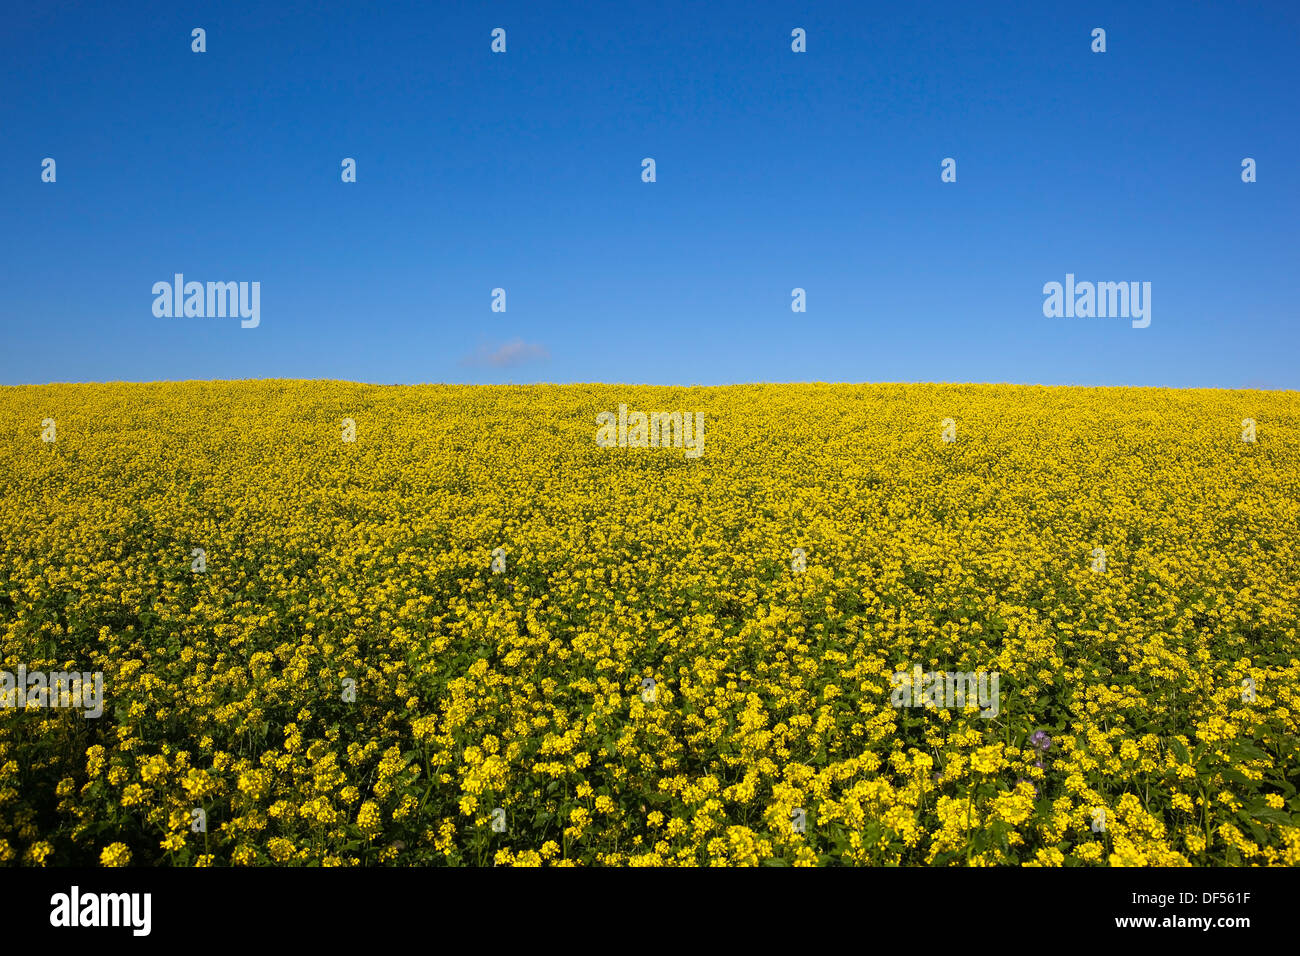 Un lumineux jaune d or domaine de la floraison des plantes de moutarde sous un ciel bleu clair à la fin de l'été Banque D'Images